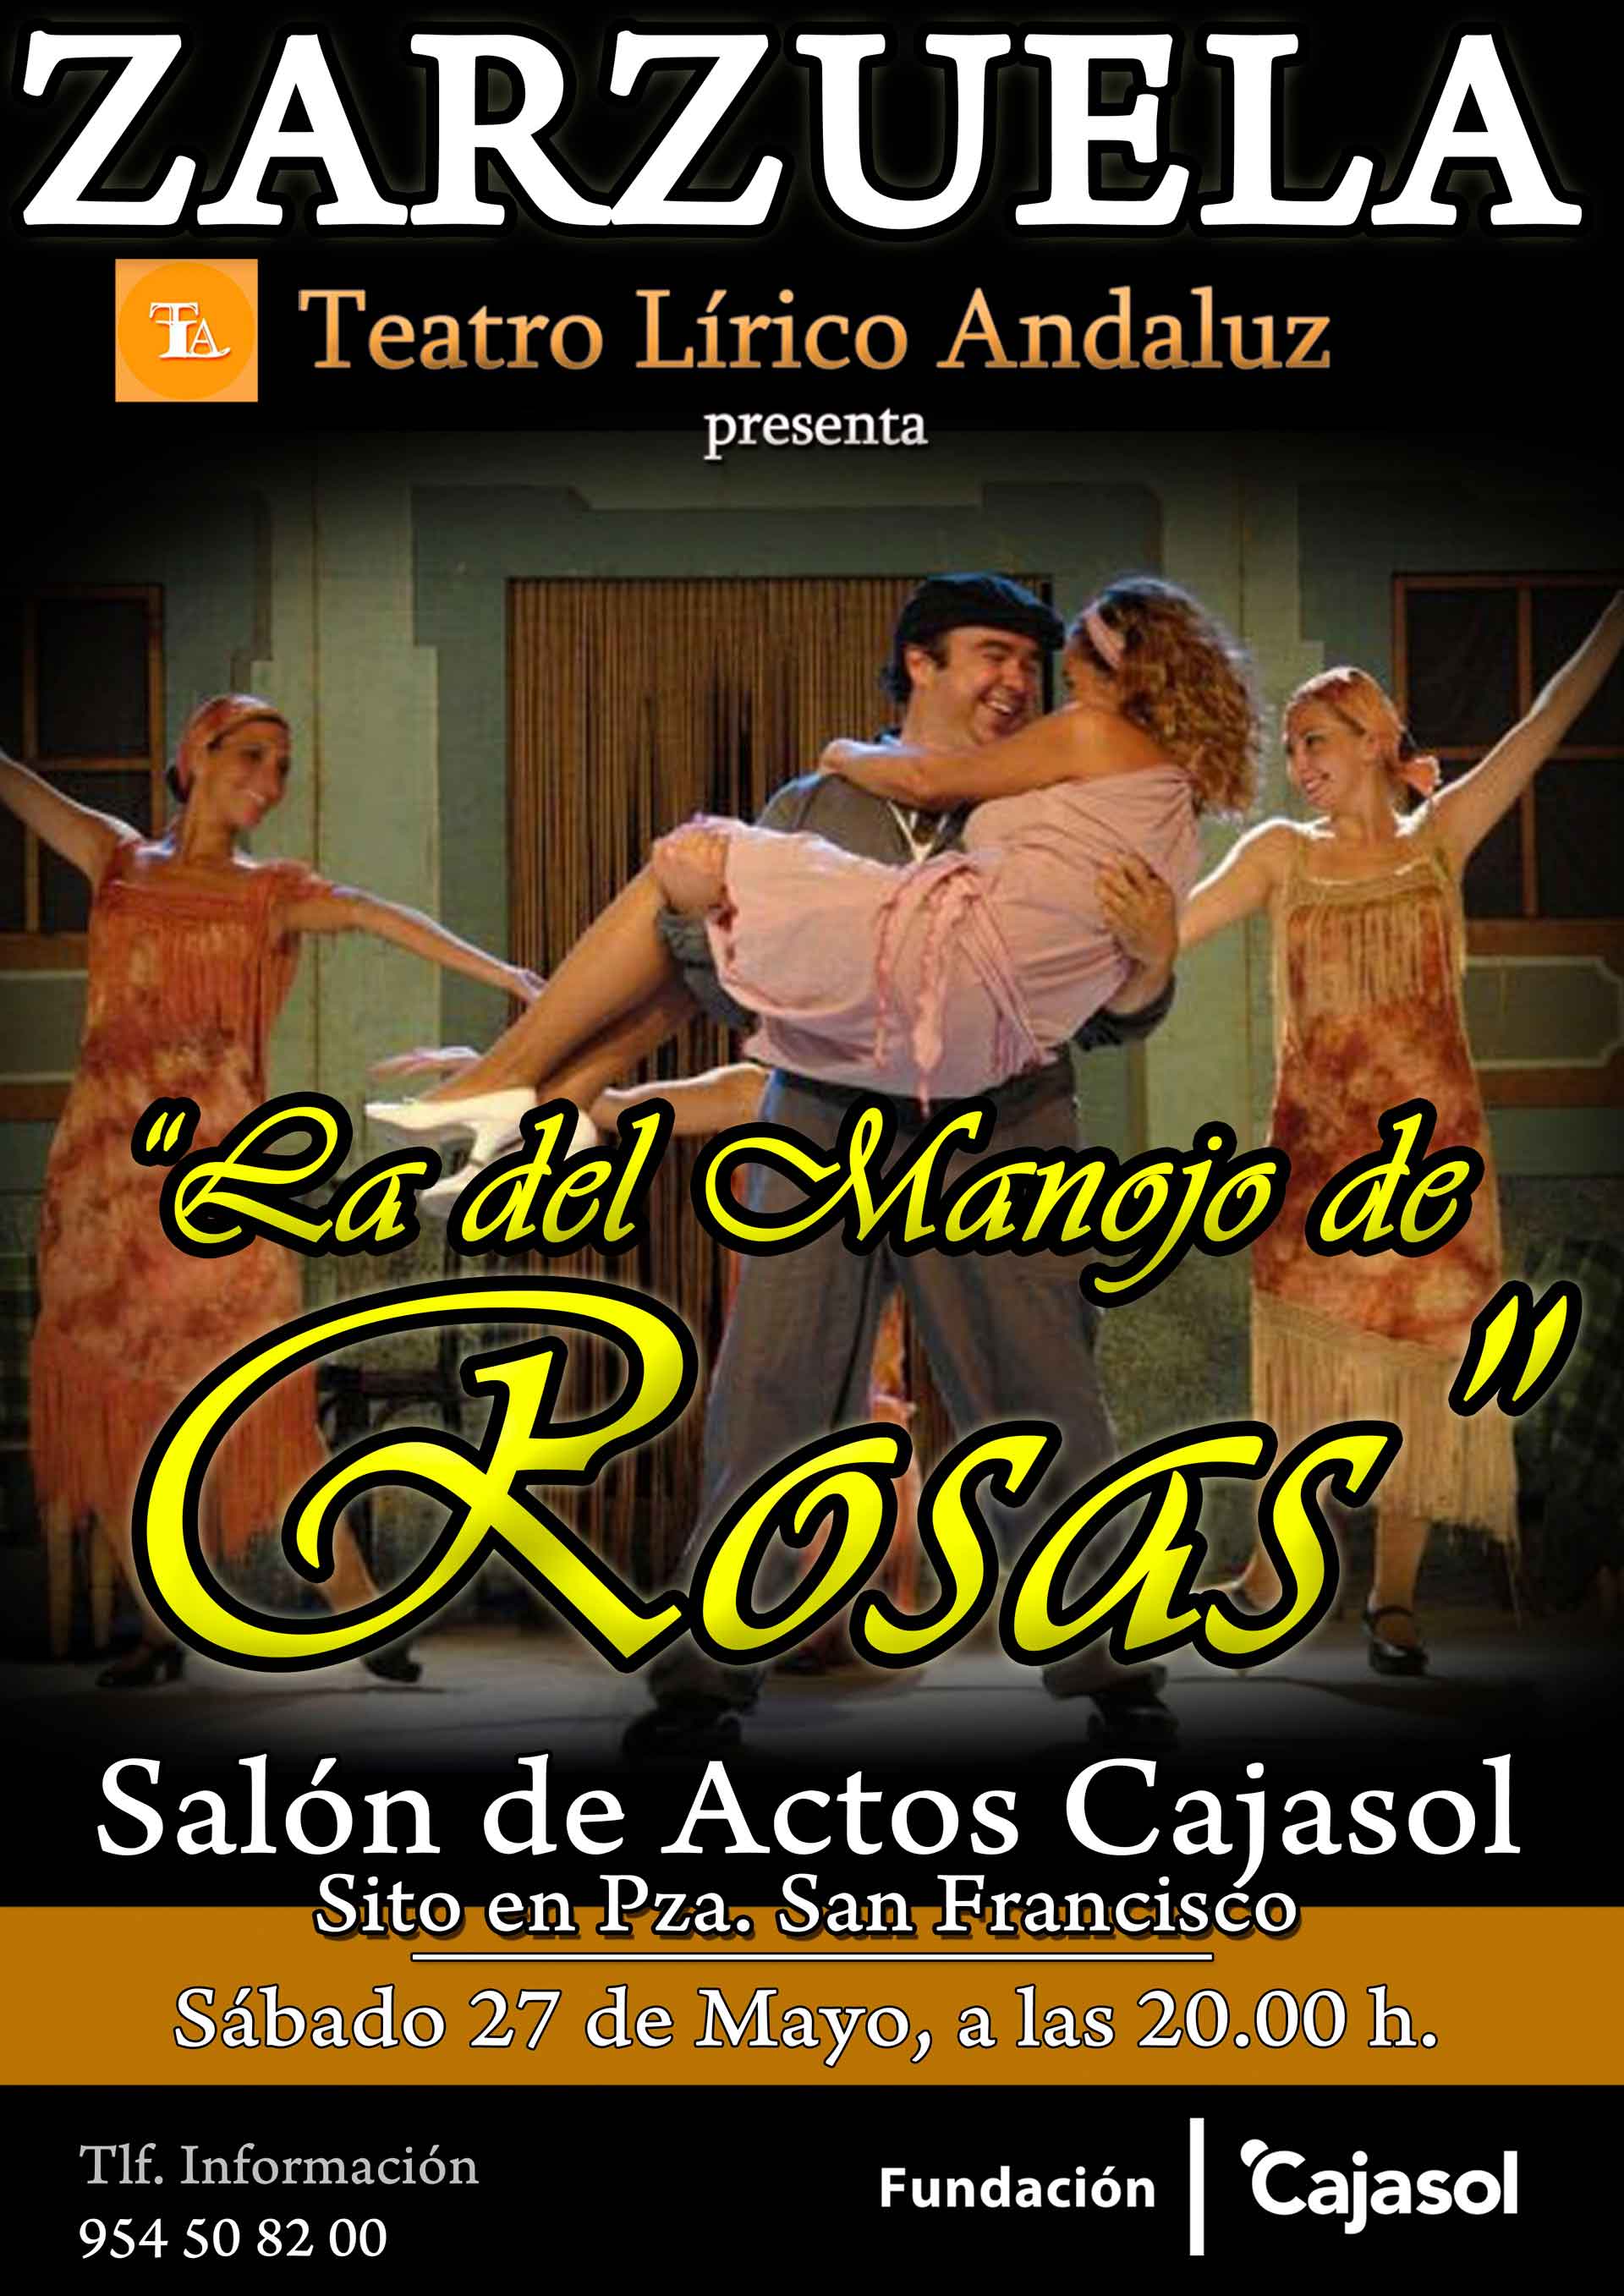 Cartel de la zarzuela 'La del Manojo de Rosas' en la Fundación Cajasol